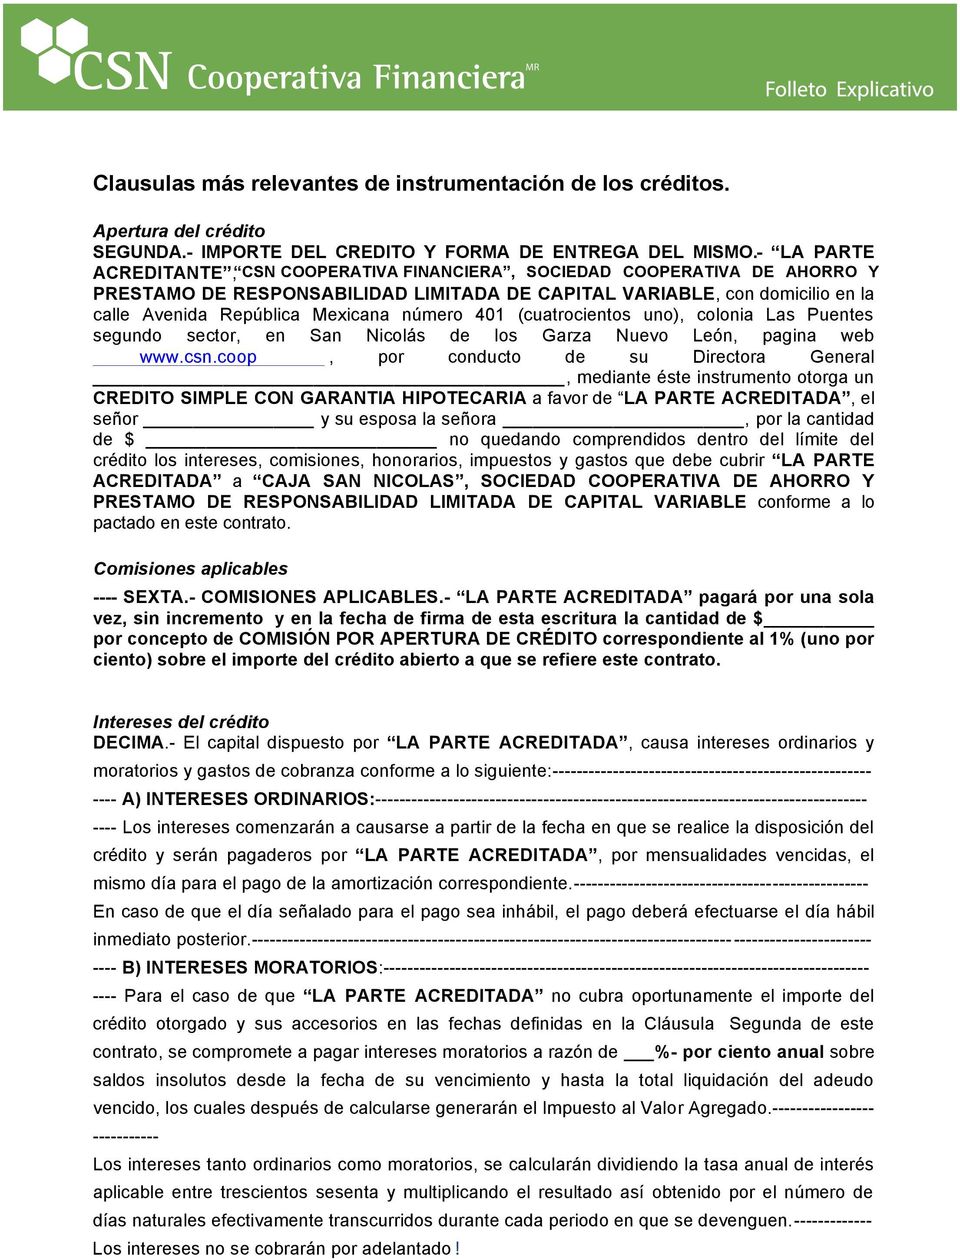 número 401 (cuatrocientos uno), colonia Las Puentes segundo sector, en San Nicolás de los Garza Nuevo León, pagina web www.csn.